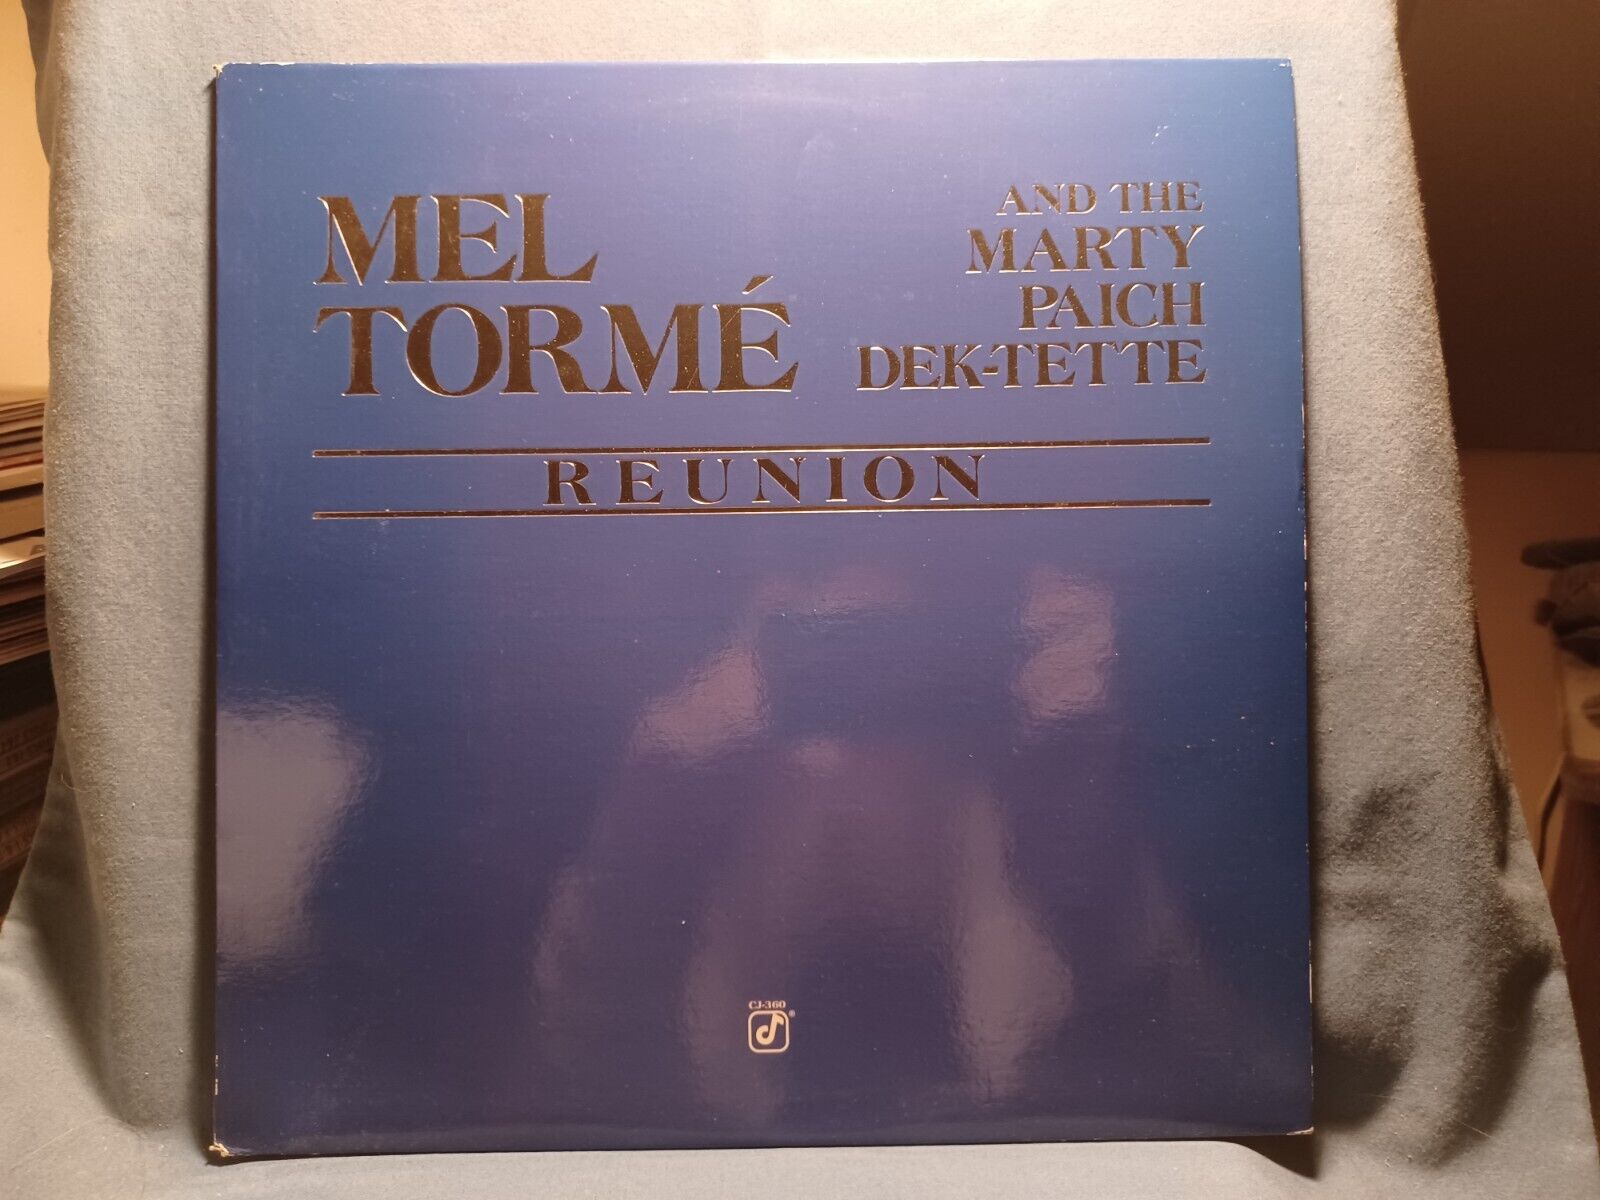 Mel Torme & The Marty Paich Dek-Tette  Reunion  1988 Concord Jazz Swing Vocal Lp